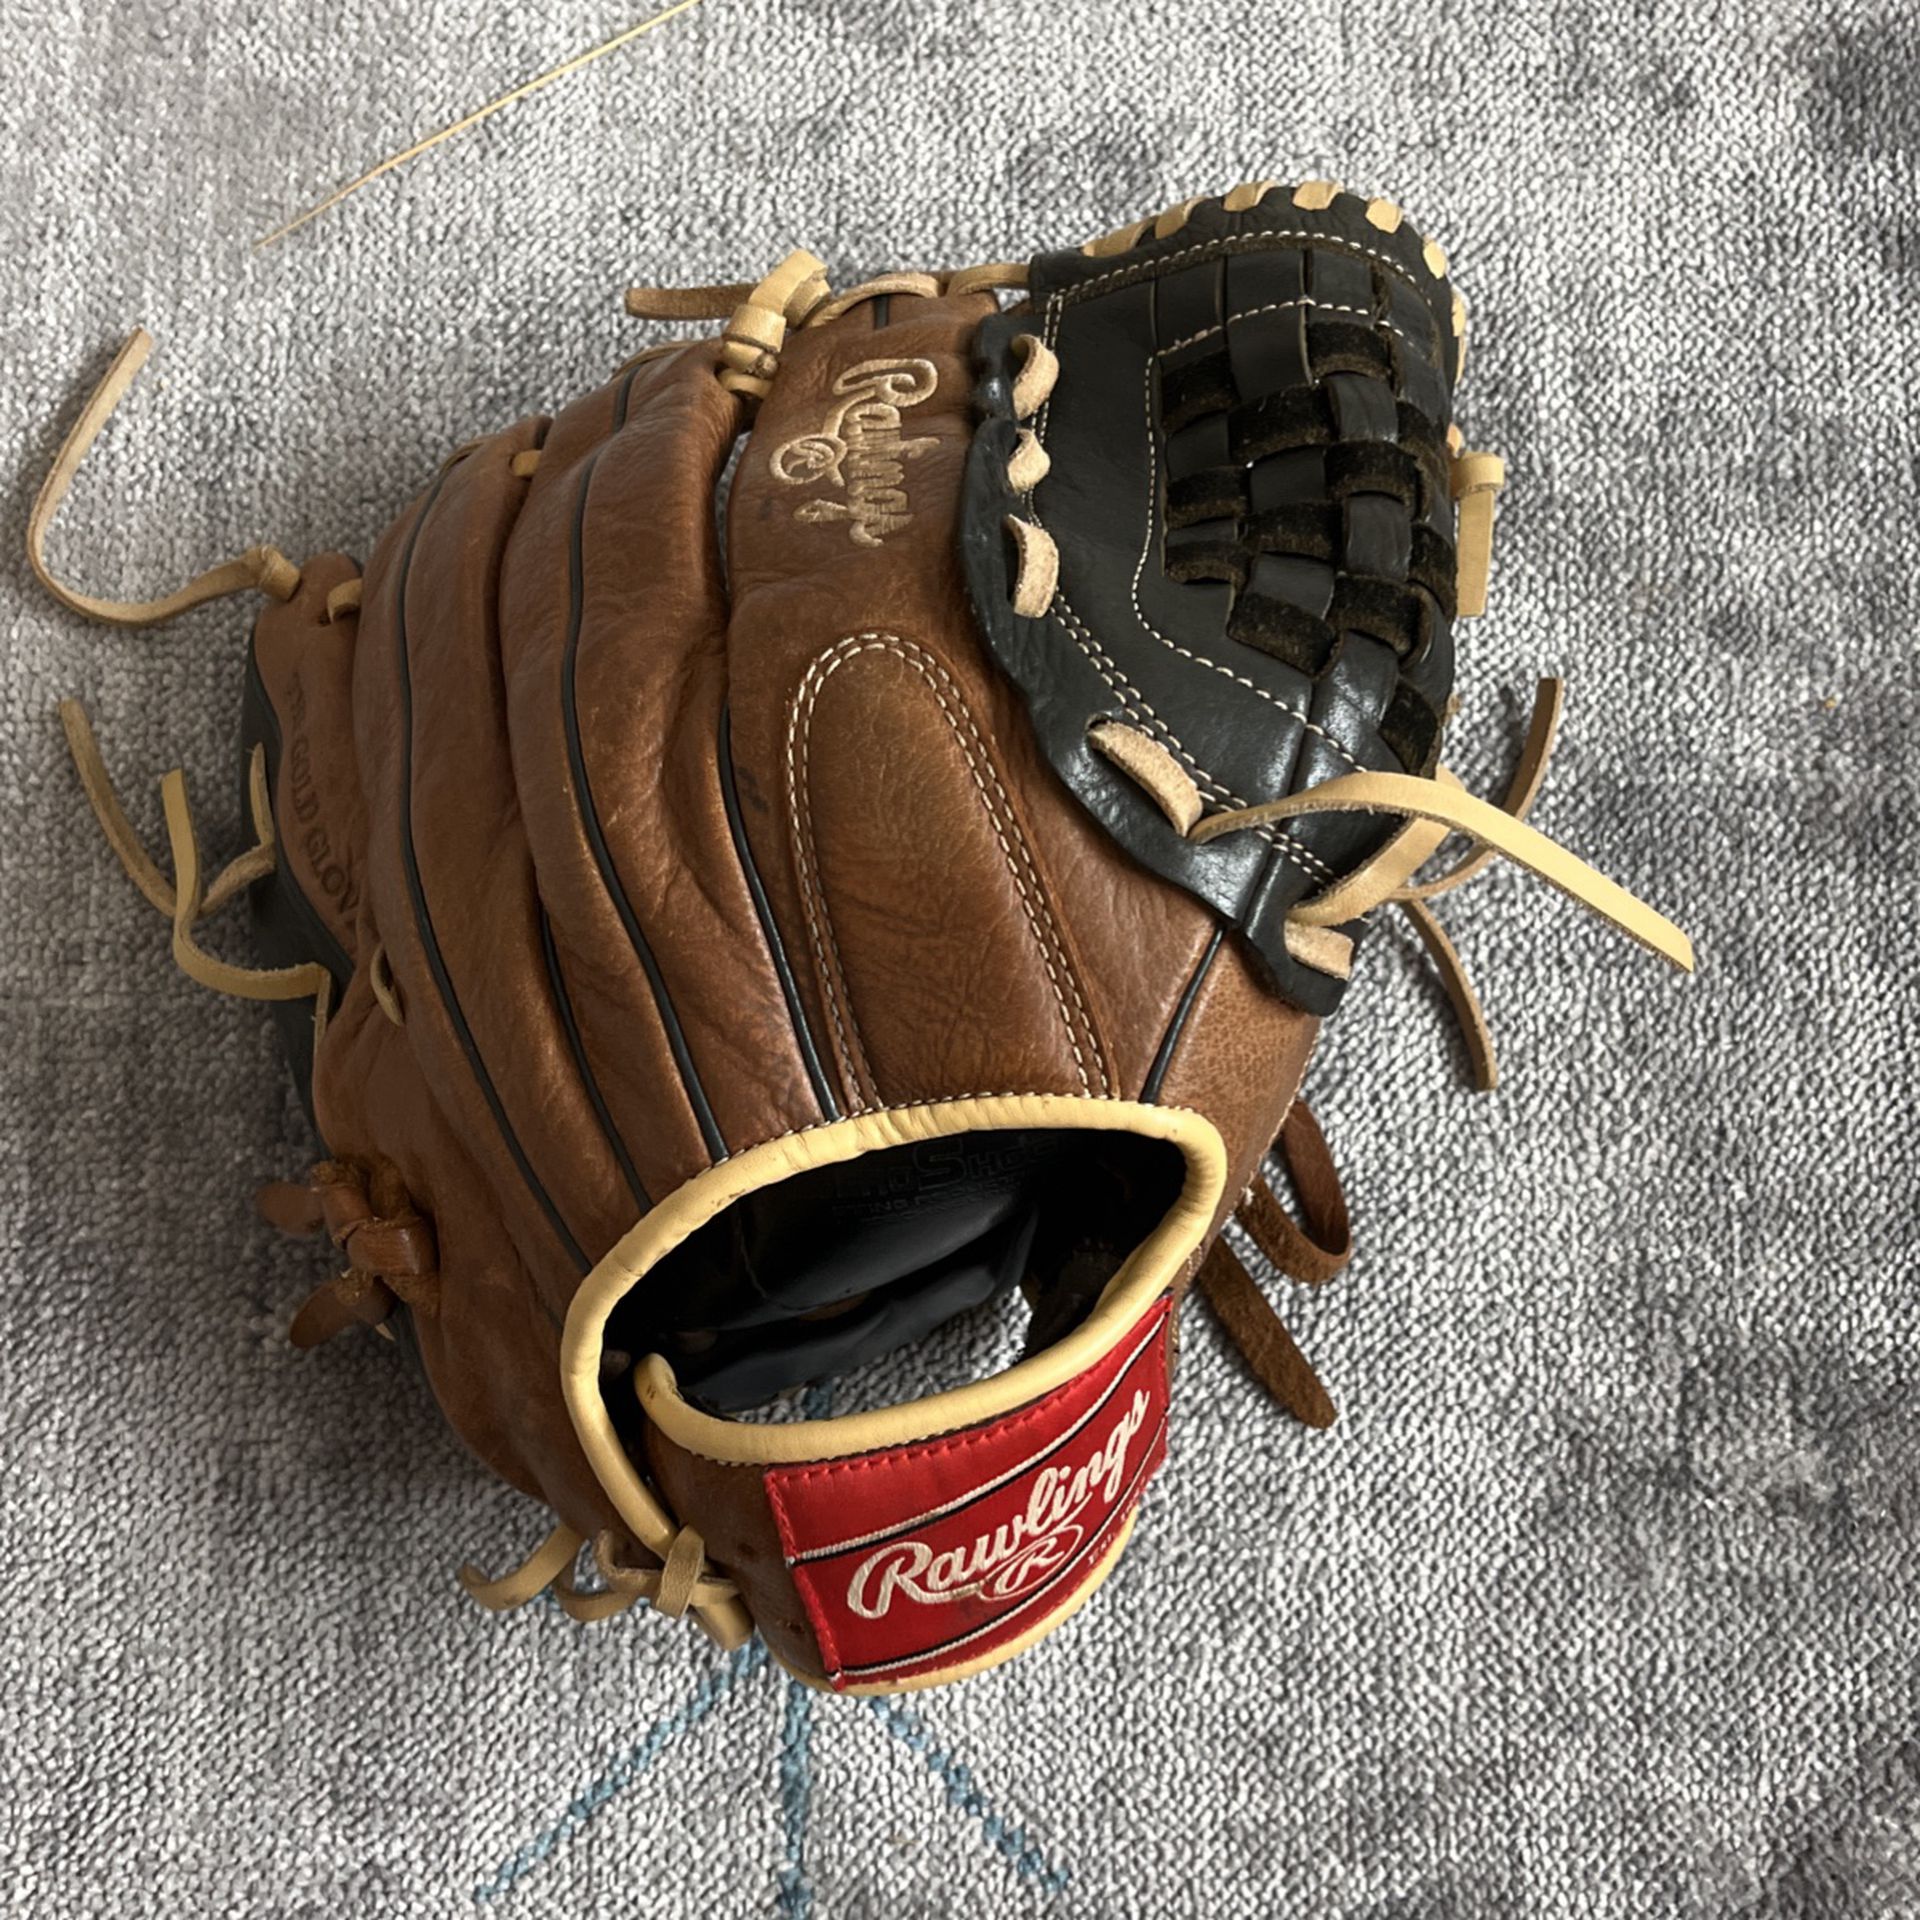 Rawlings Baseball Glove 12 Inches 